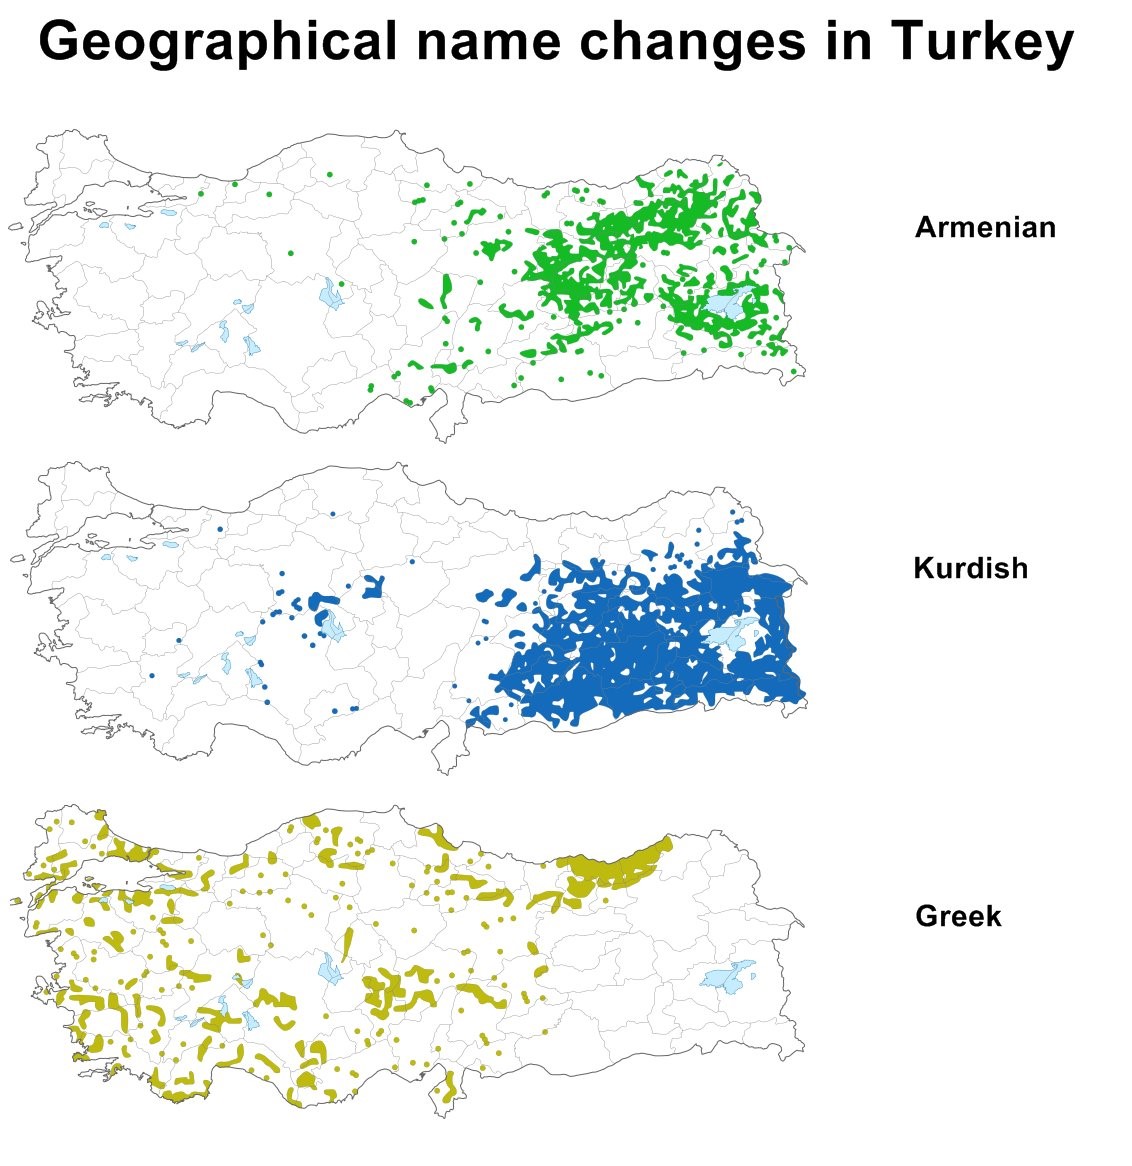 Η γη αυτή δεν ανήκει στους Τούρκους – Tο μαθαίνουν κι άλλοι σιγά-σιγά - Φωτογραφία 2